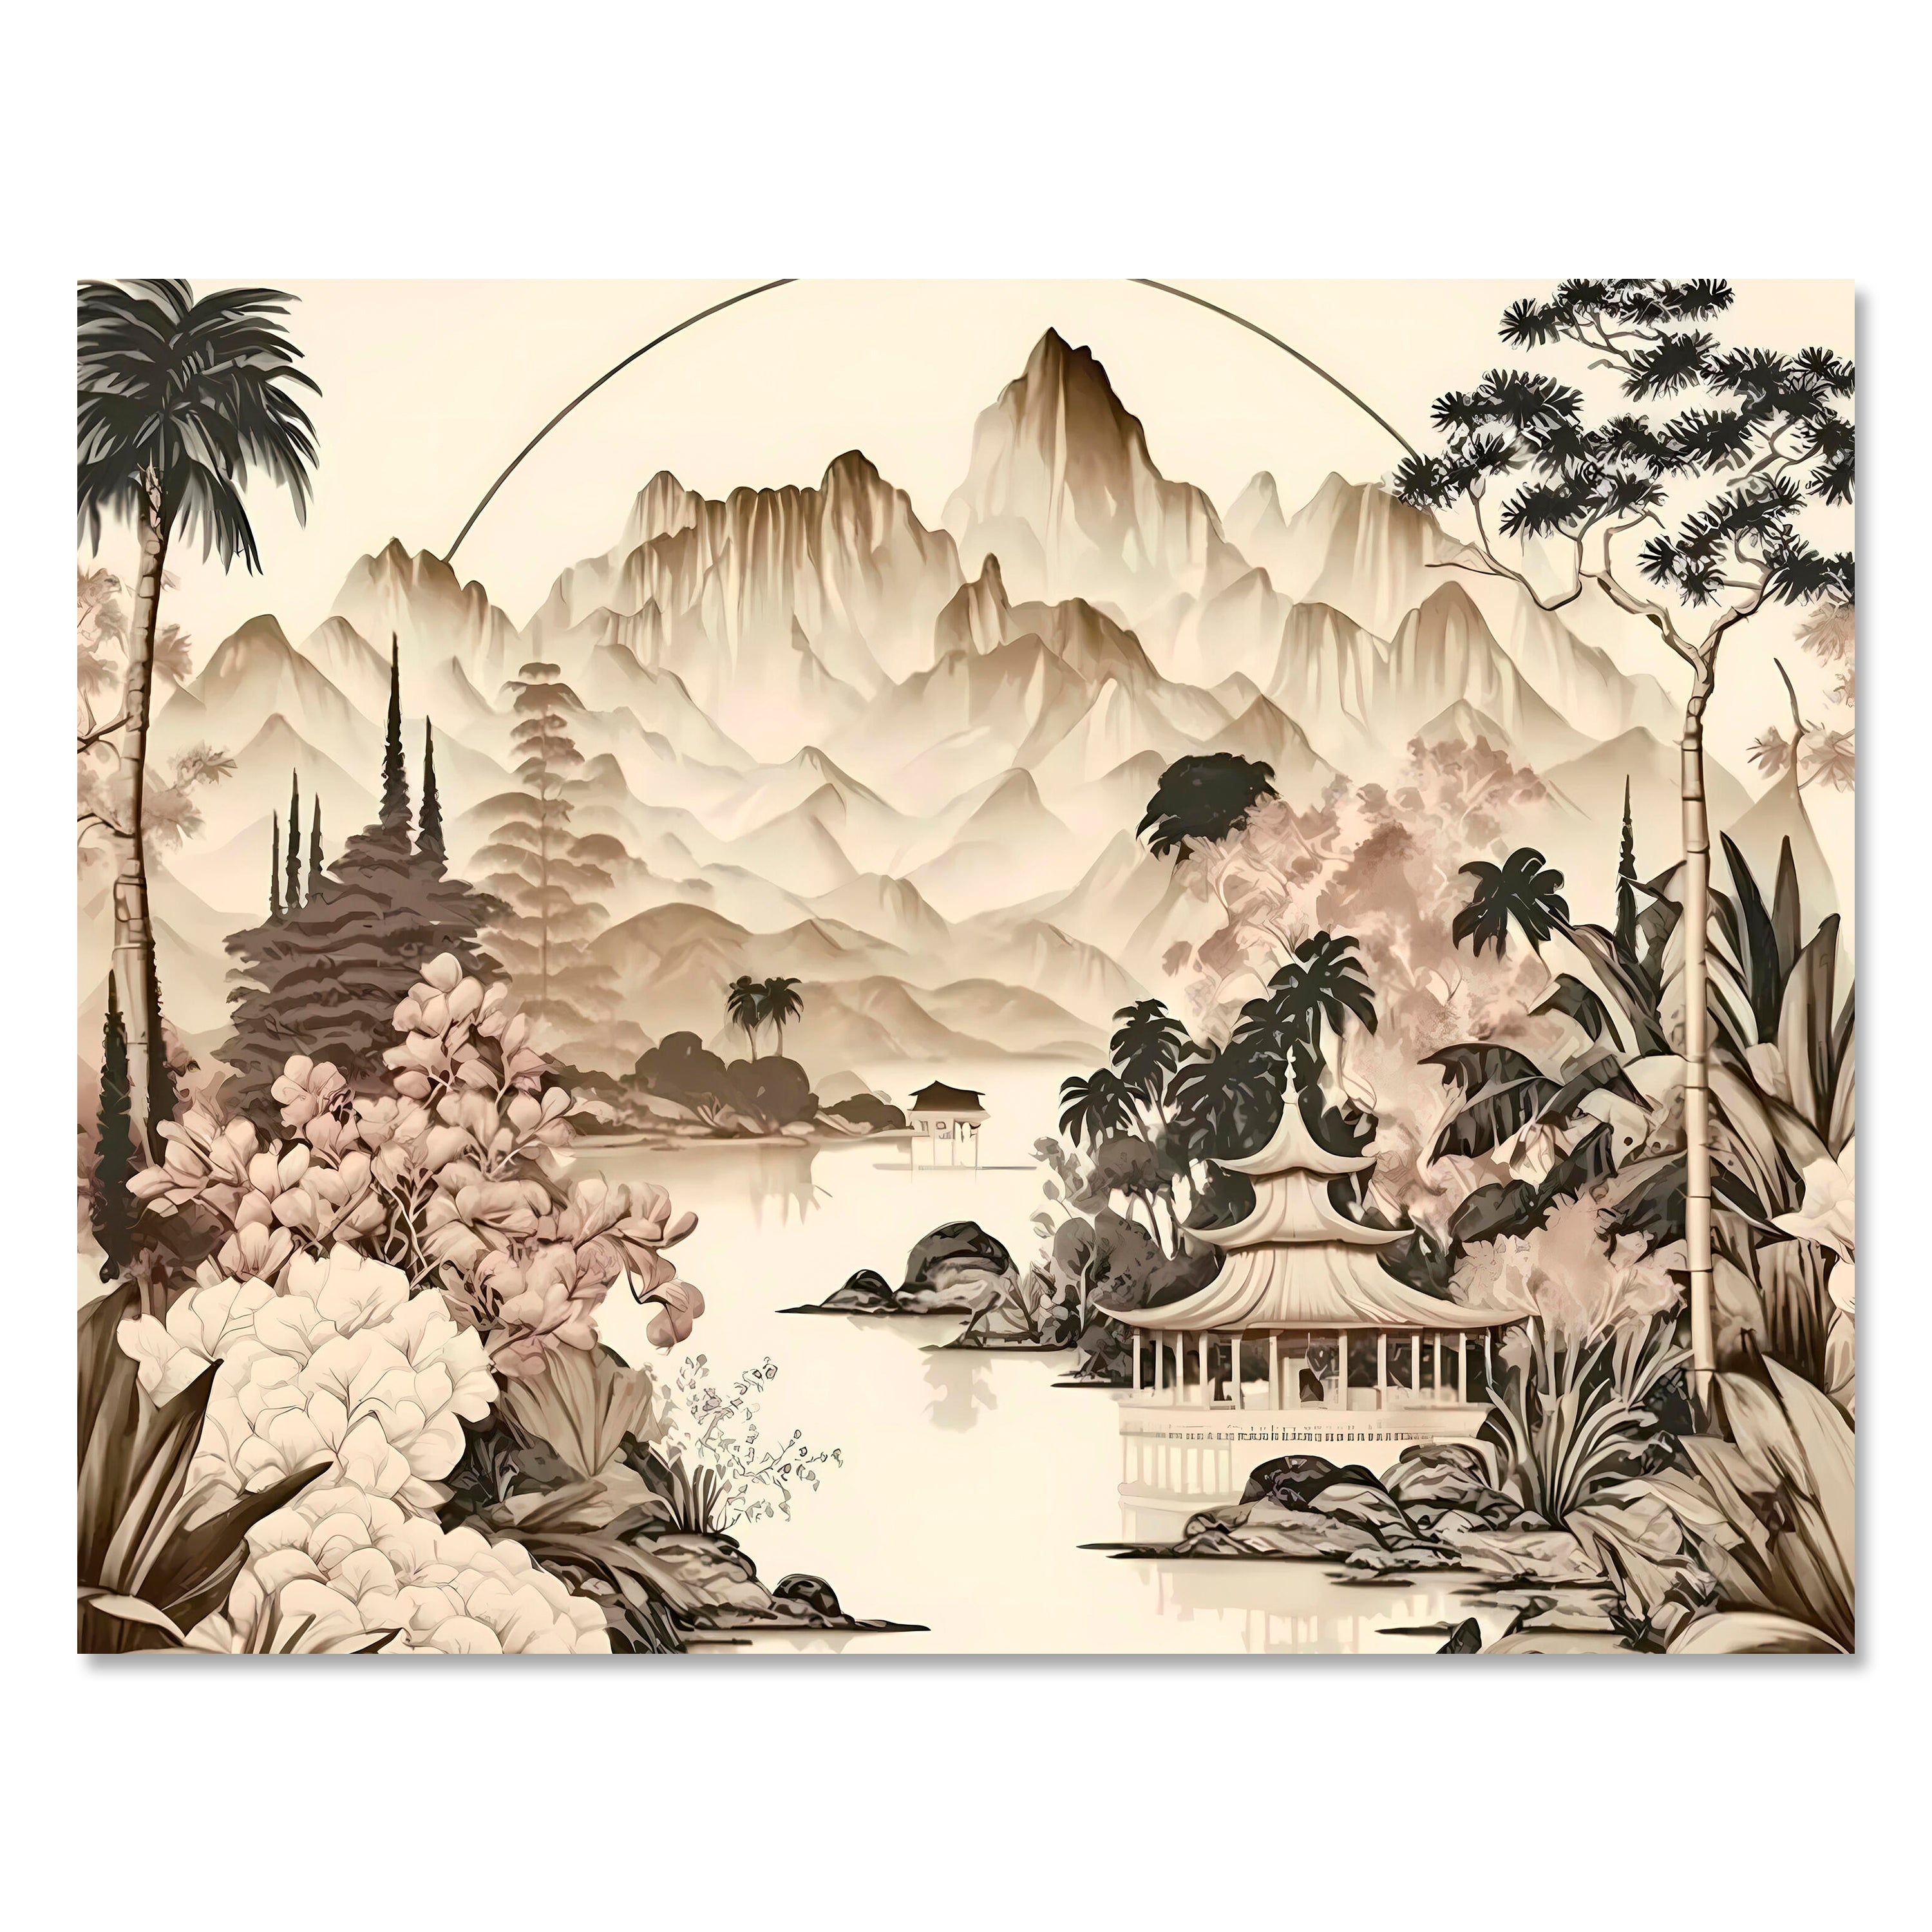 Leinwandbild Chinesische Landschaft, Querformat M0782 kaufen - Bild 1